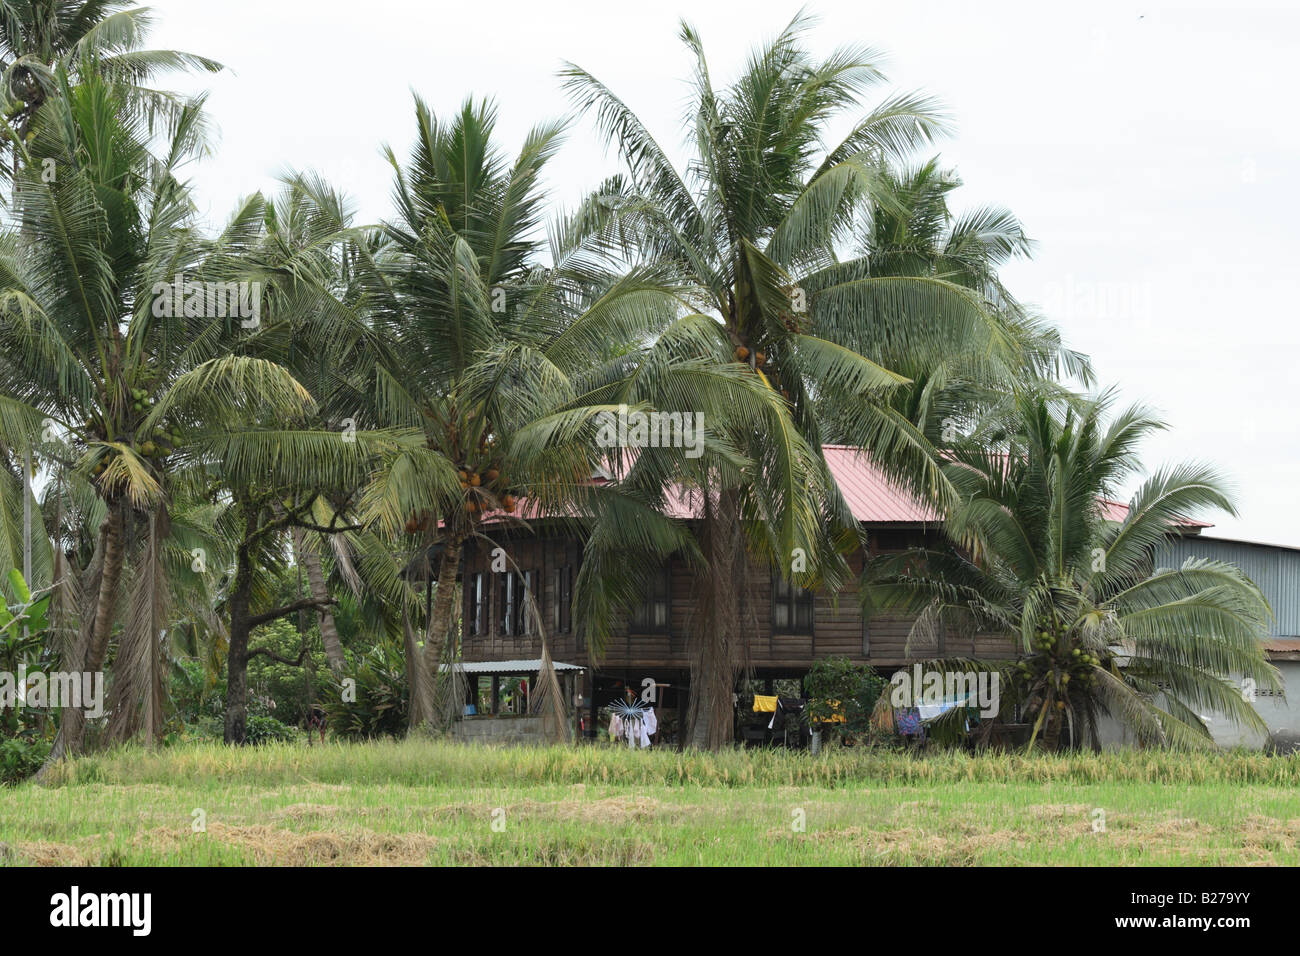 Maison de village rural de Malaisie sur pilotis Banque D'Images